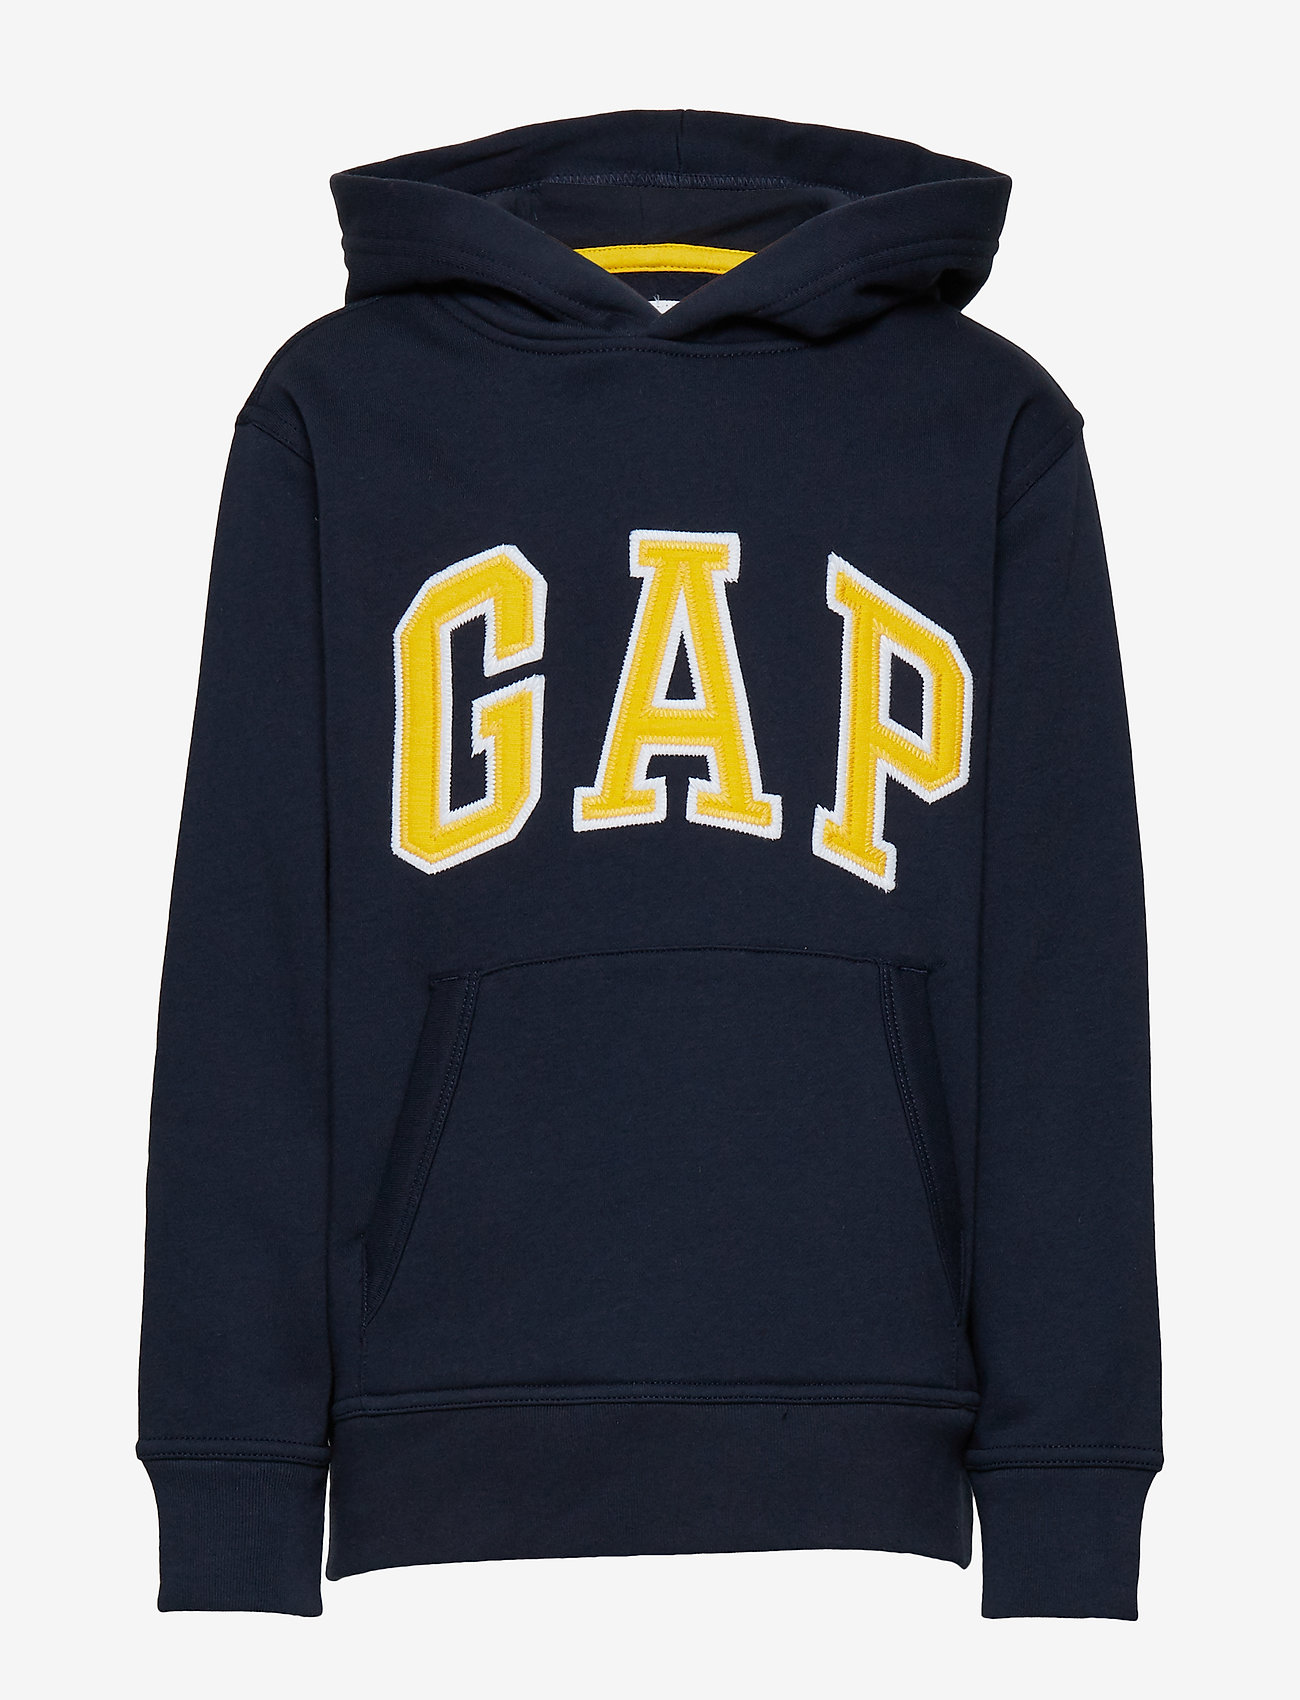 gap weekend sweatshirt